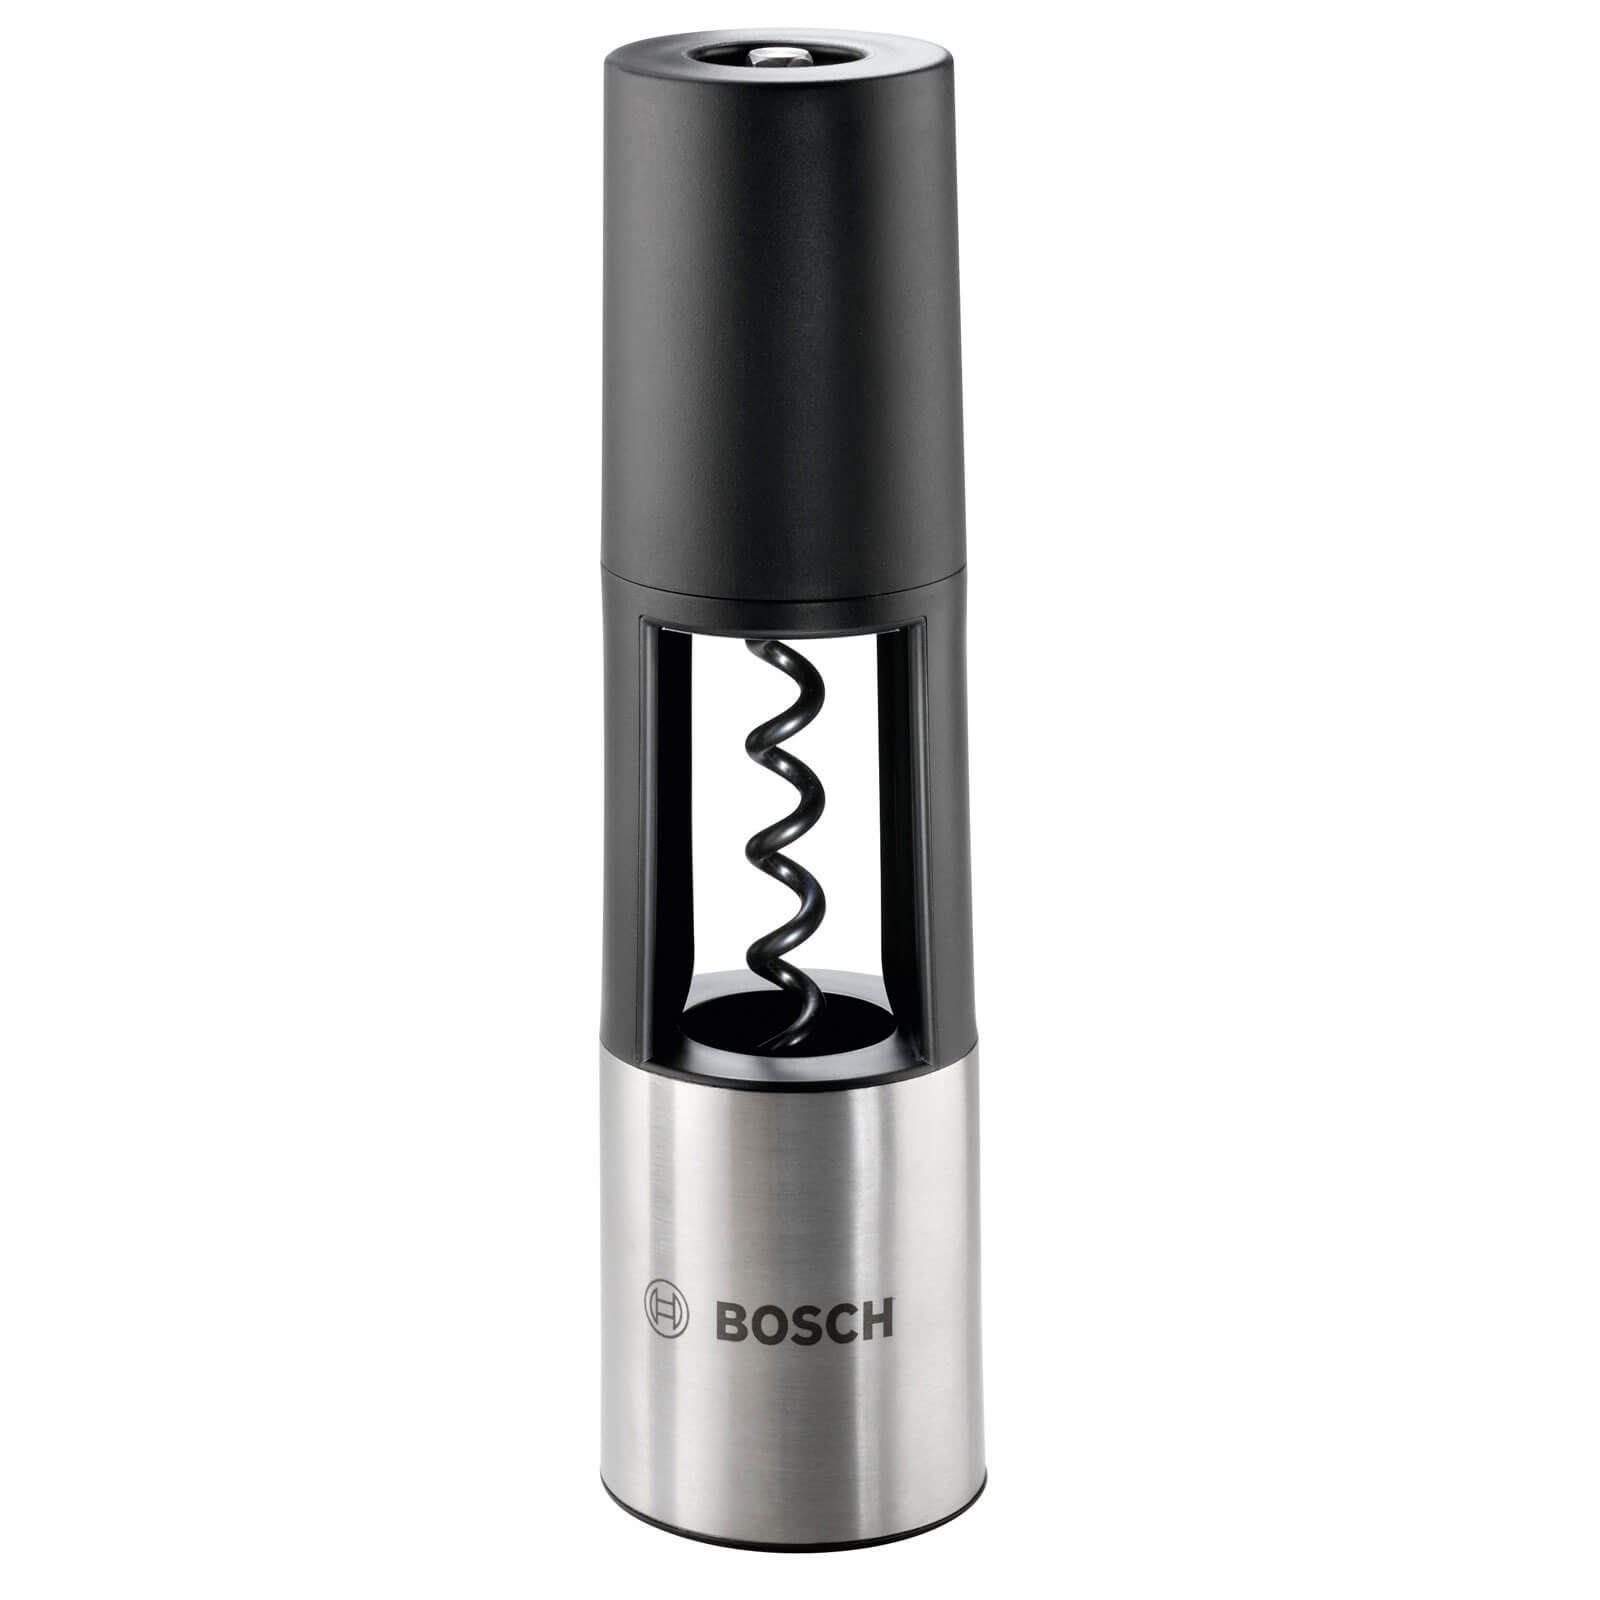 Bosch IXO Vino Corkscrew Attachment for IXO Screwdrivers